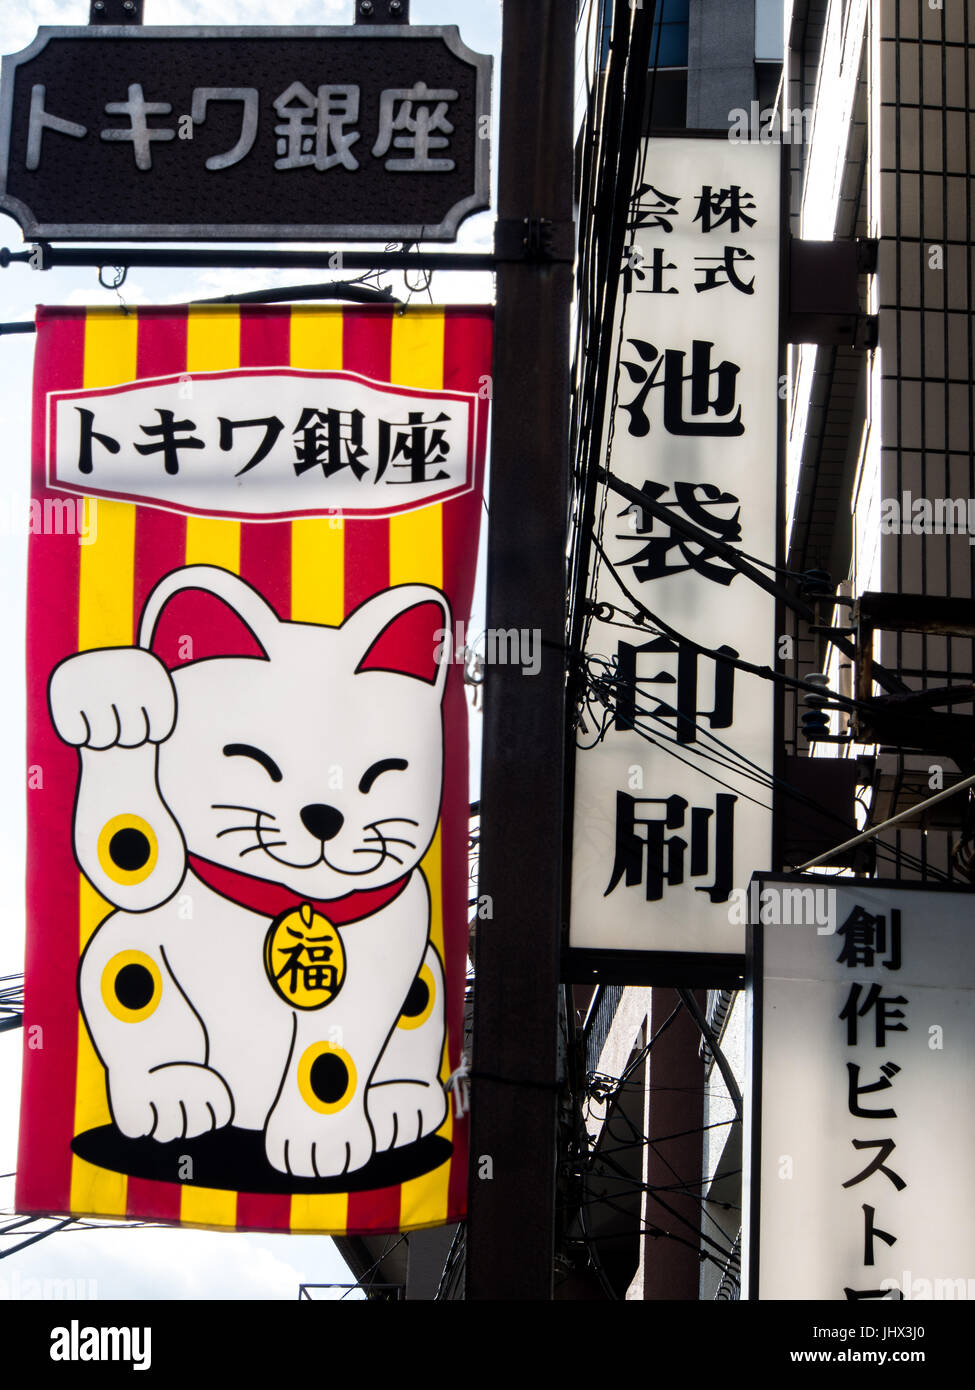 Maneki-neko on advertising banner, with kanji signs and street poles, Ikebukuro, Toko, Japan Stock Photo